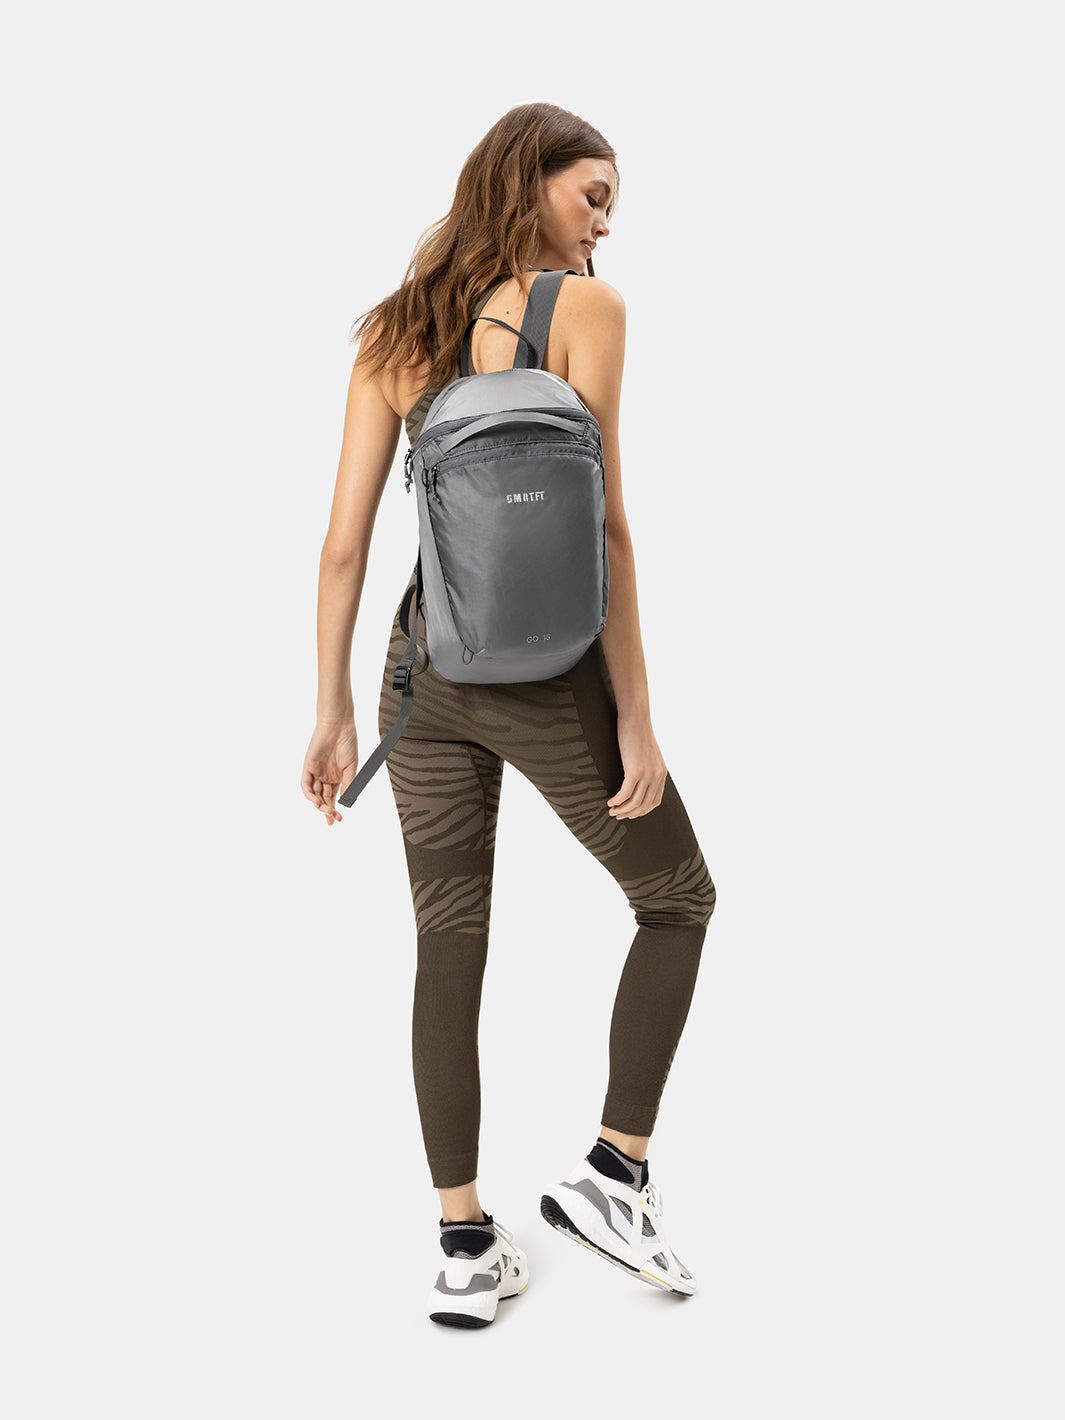 Backpacks For Women | Gray Backpack | SMRTPAC GO